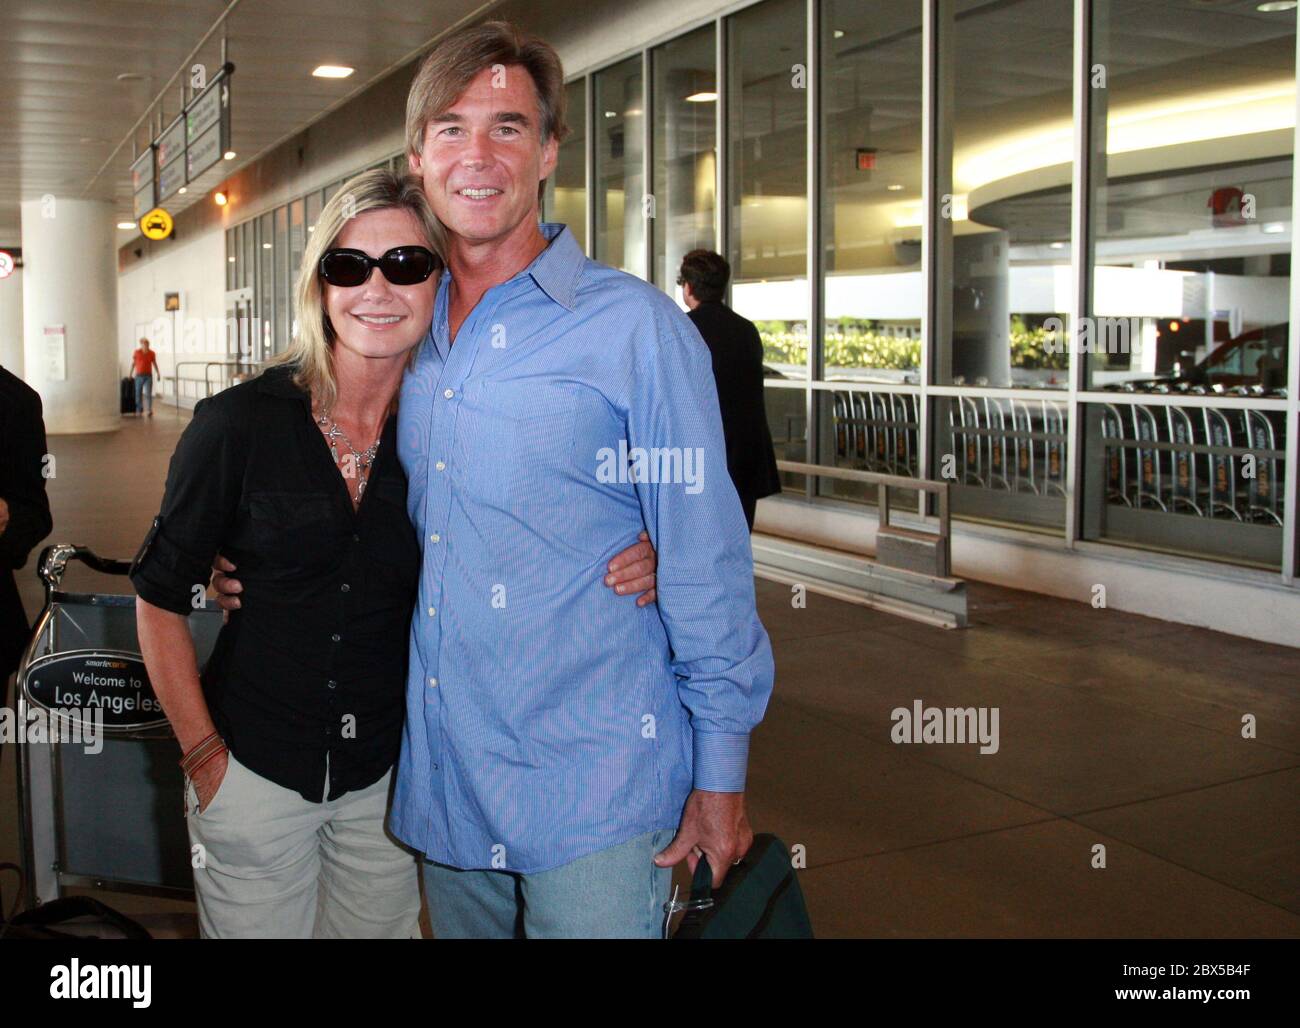 Olivia Newton-John et son mari arrivent à l'aéroport de LAX après de courtes vacances en Floride. Olivia était lumineuse et souriait à son retour. Août 14 2008 Banque D'Images